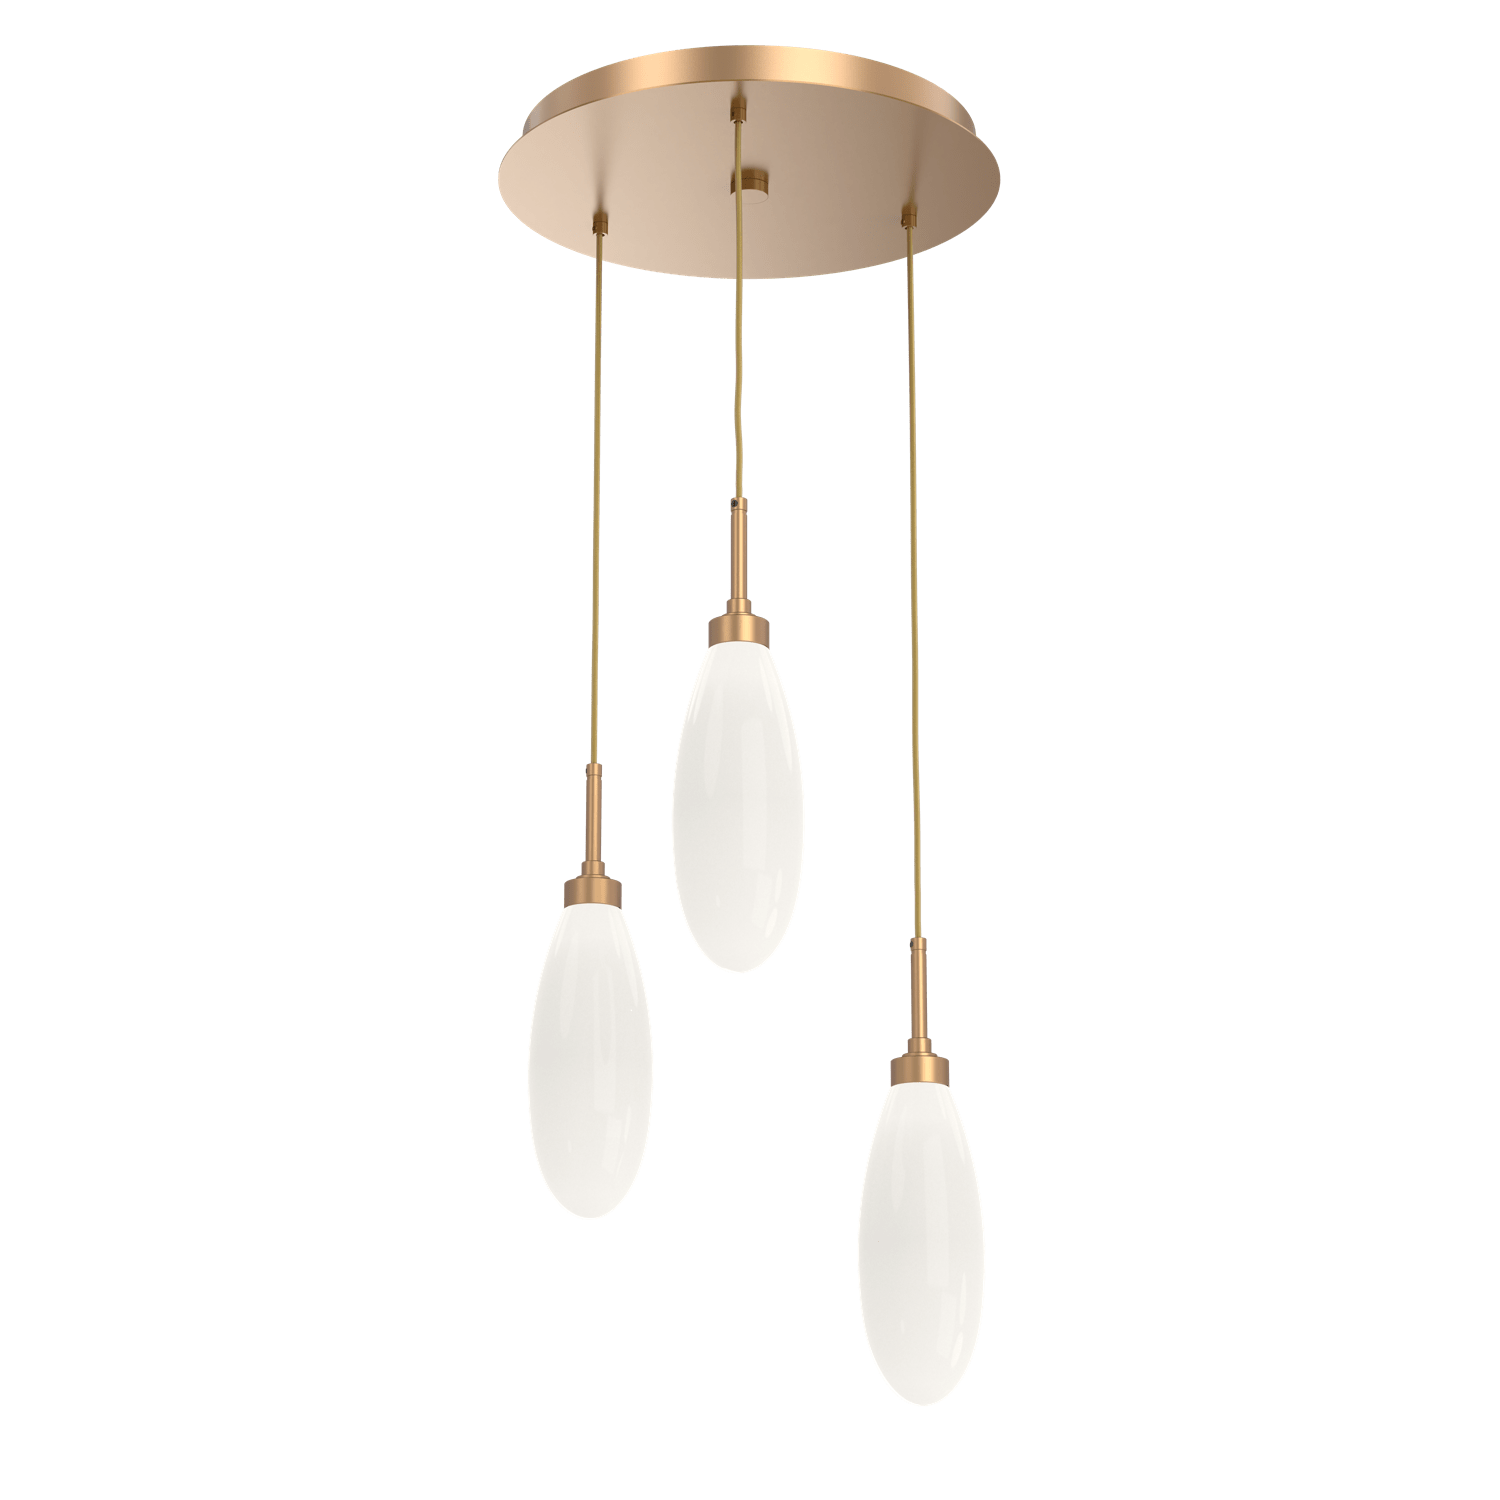 Hammerton Studio Fiori Round 3 pendant lights chandelier in Novel Brass CHB0071-03-NB